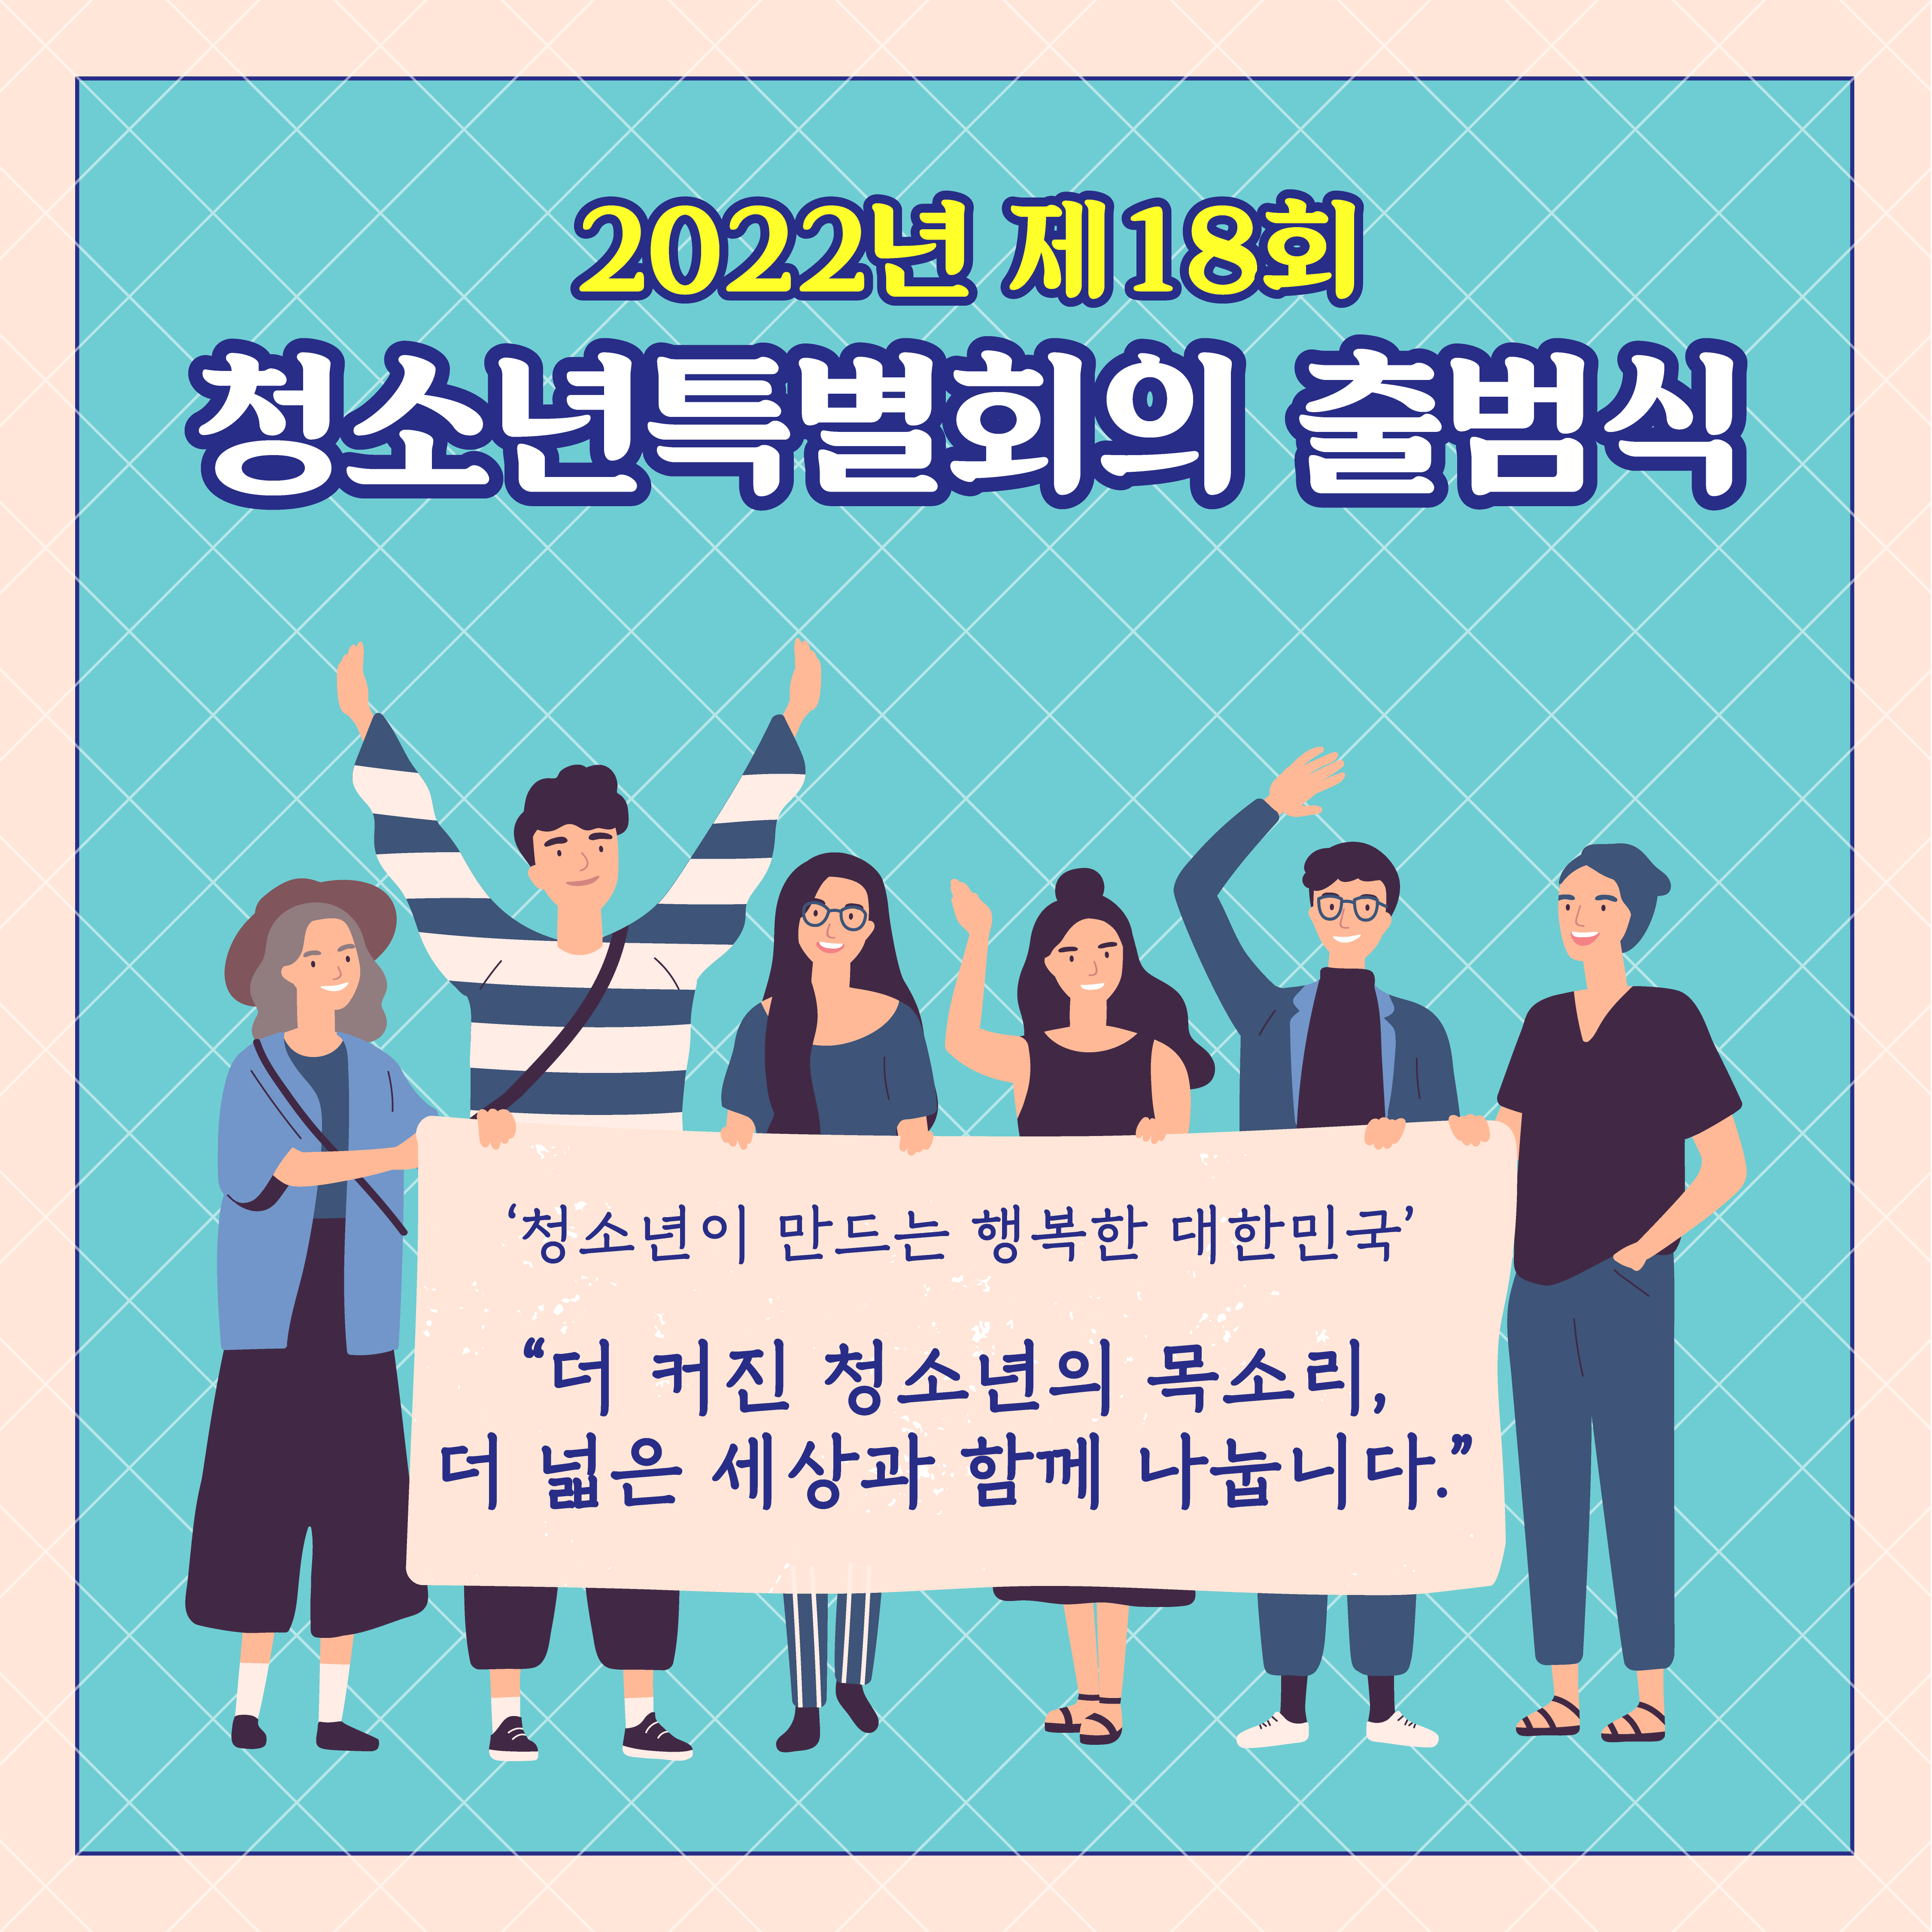 2022년 제18회 청소년특별회의 출범식 '청소년이 만드는 행복한 대한민국' "더 커진 청소년의 목소리, 더 넓은 세상과 함께 나눕니다."